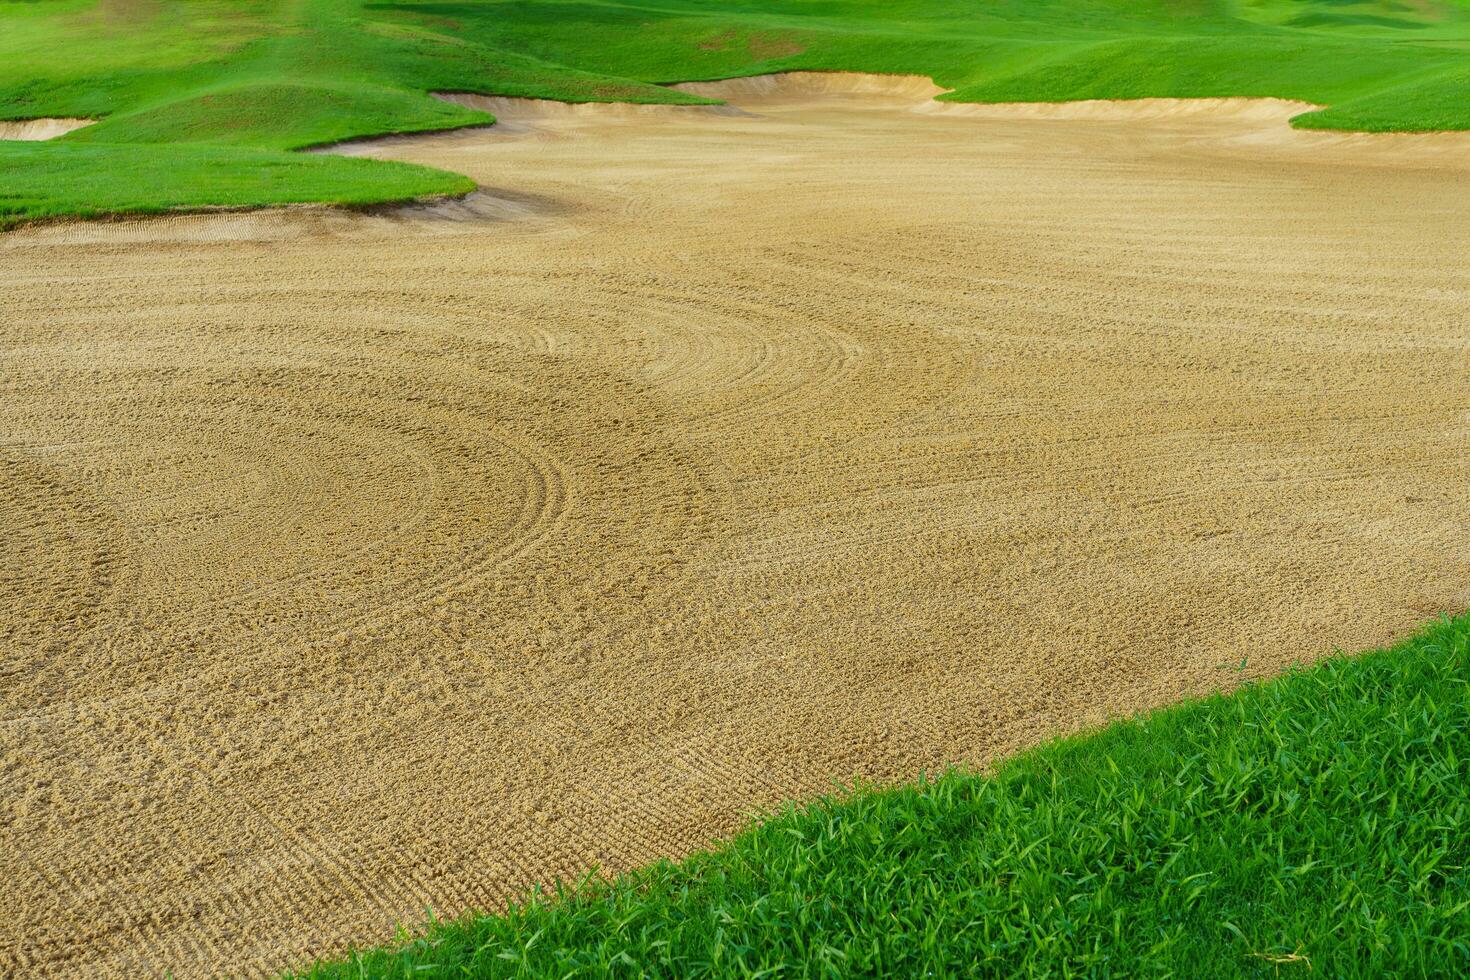 golf corso sabbia fossa bunker, verde erba circostante il bellissimo sabbia fori è uno di il maggior parte stimolante ostacoli per giocatori di golf e Aggiunge per il bellezza di il golf corso. foto